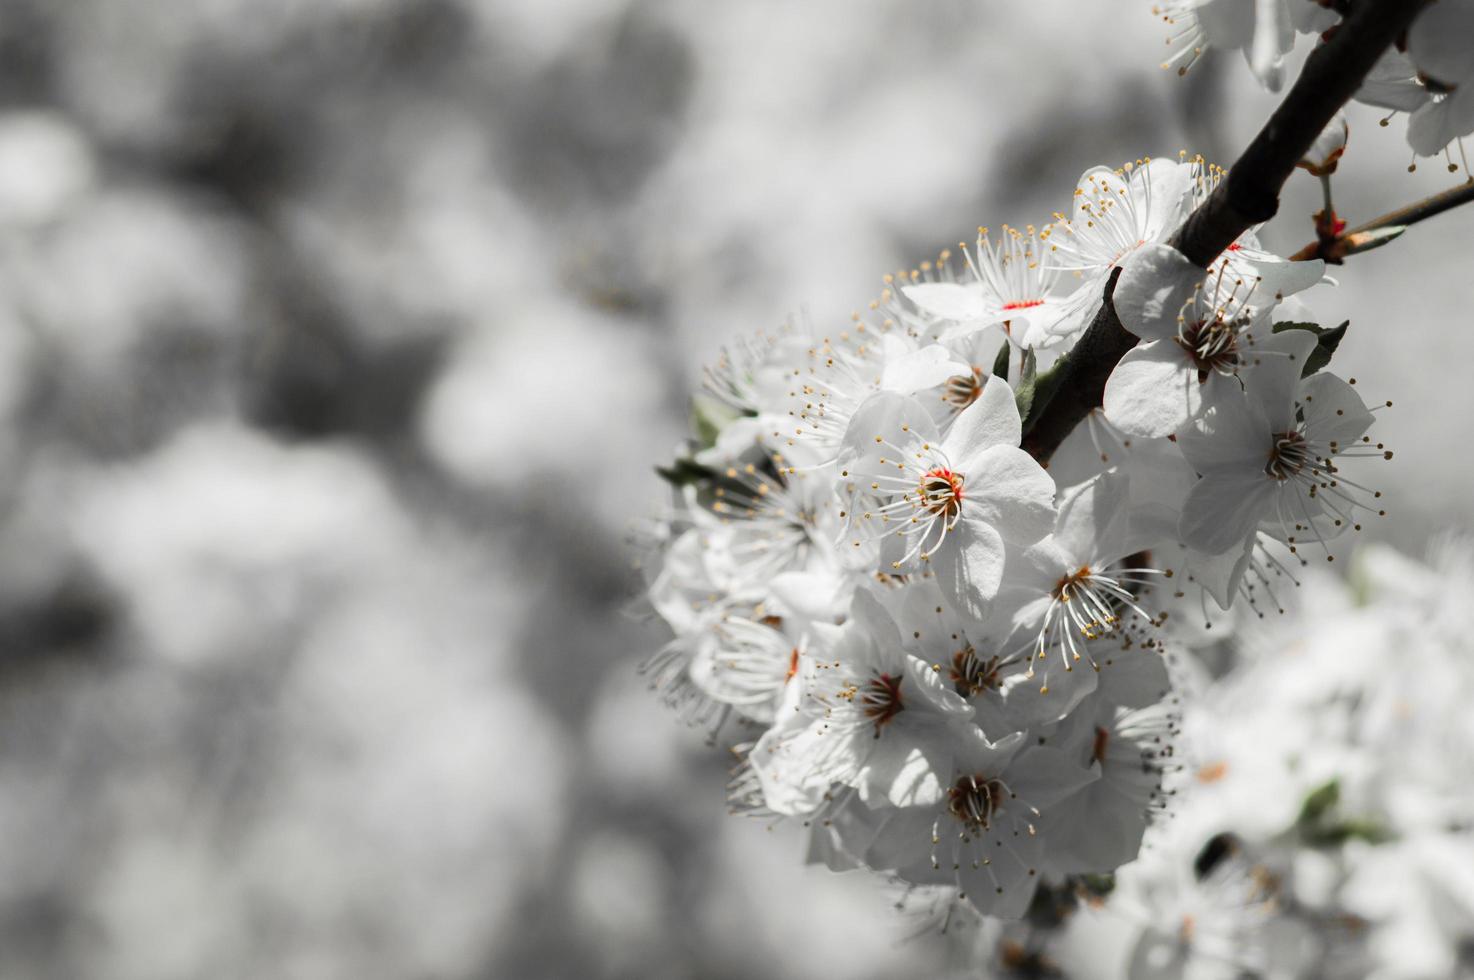 flores de ciruela cereza con pétalos blancos foto